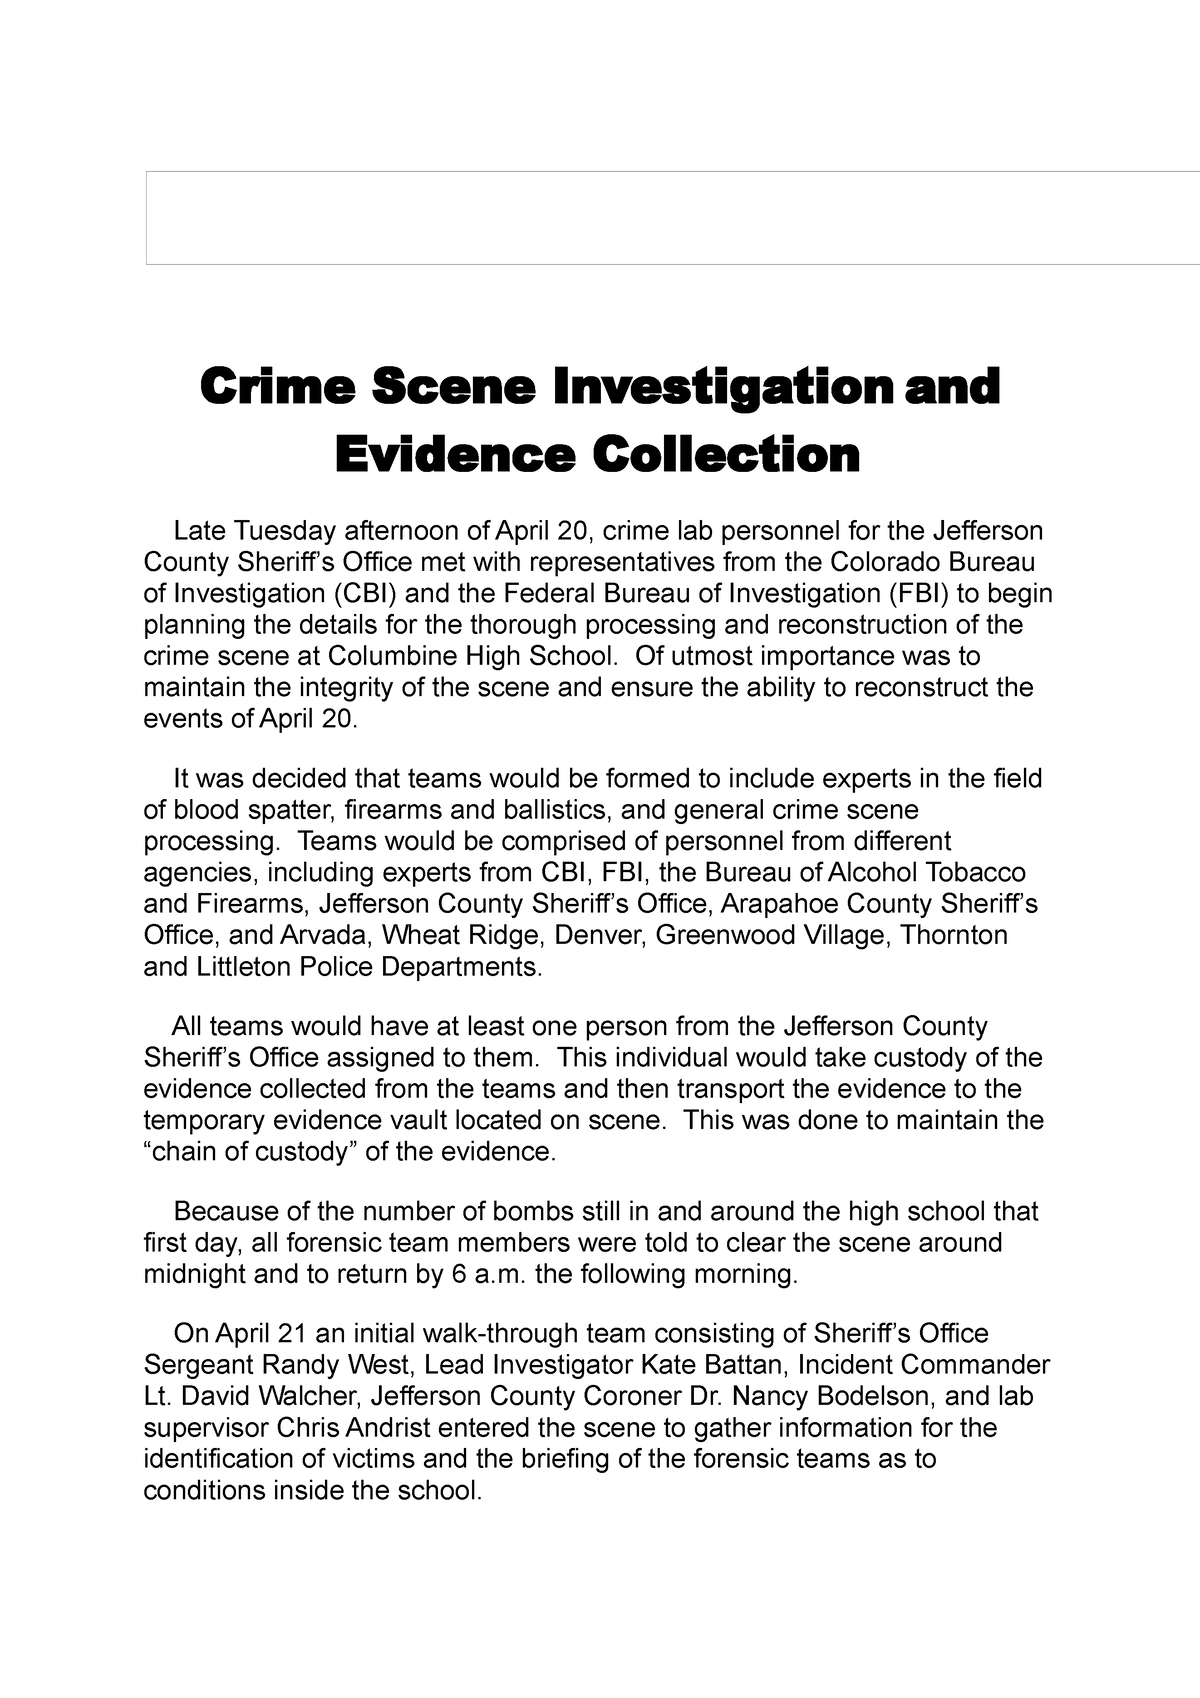 investigator witness statement